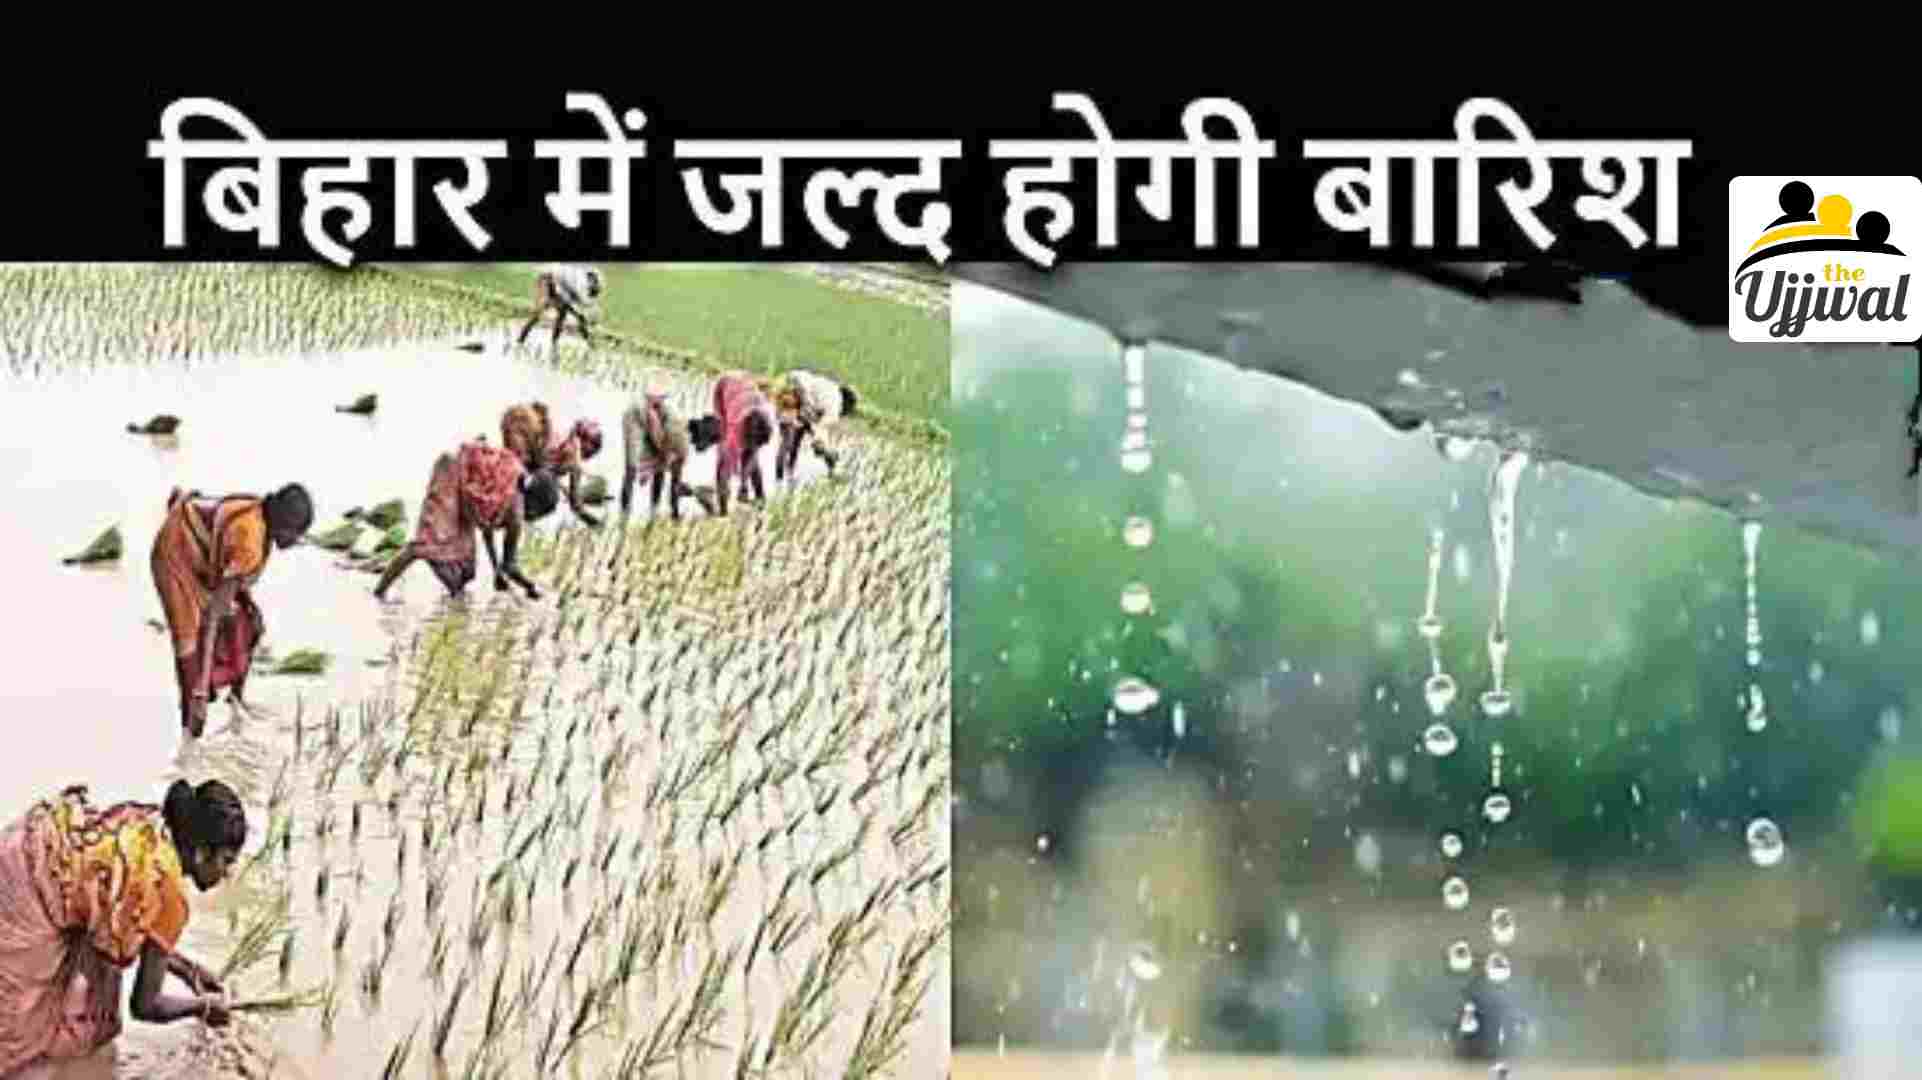 Rainfall in bihar (इस तारीख से बिहार में होगी भारी बारिश)